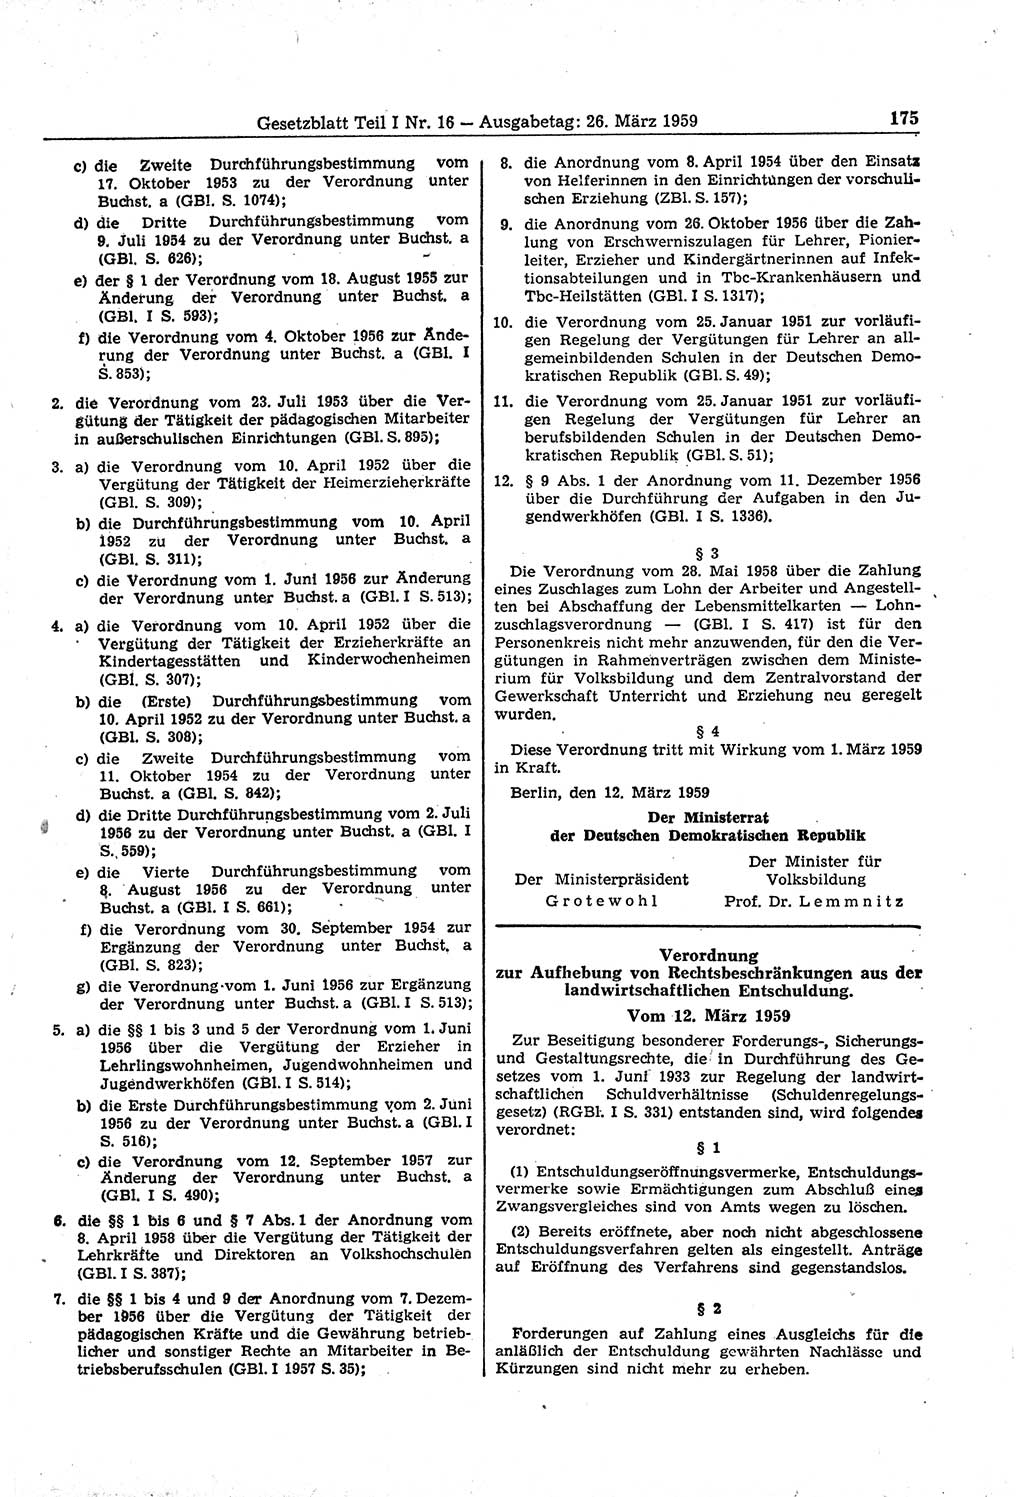 Gesetzblatt (GBl.) der Deutschen Demokratischen Republik (DDR) Teil Ⅰ 1959, Seite 175 (GBl. DDR Ⅰ 1959, S. 175)